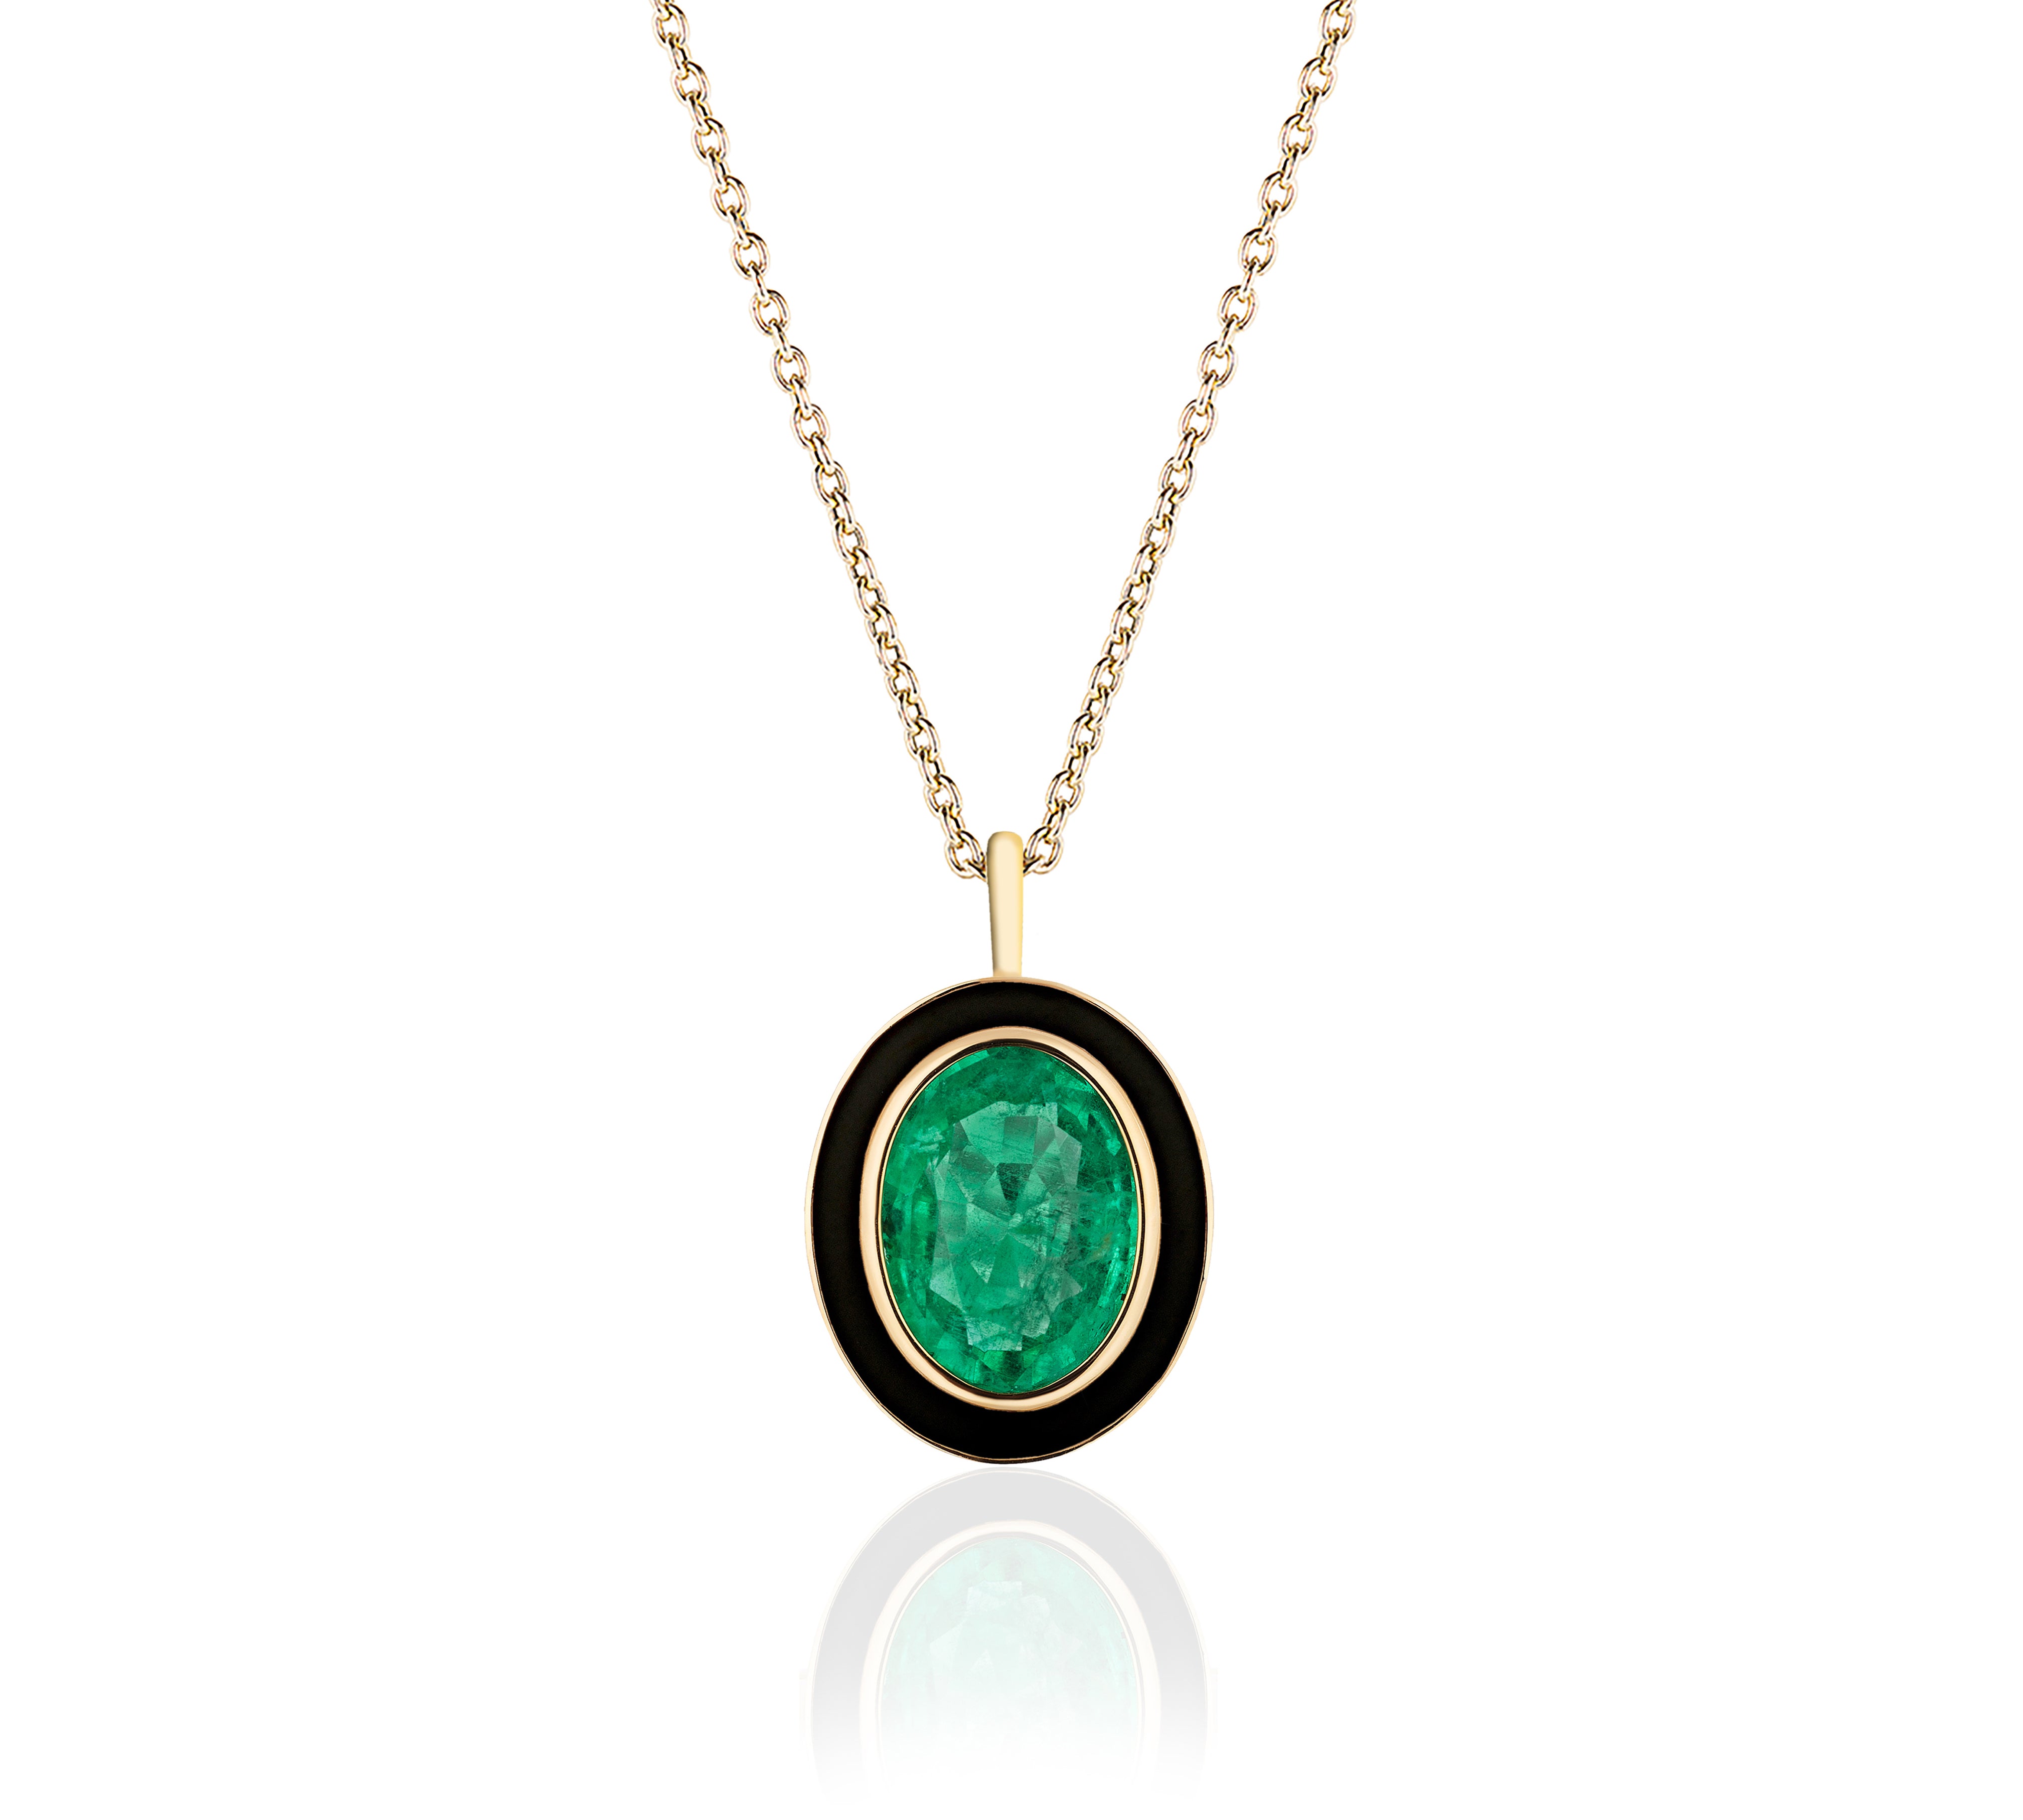 Emerald Oval Pendant Necklace with Enamel Pendant Goshwara   